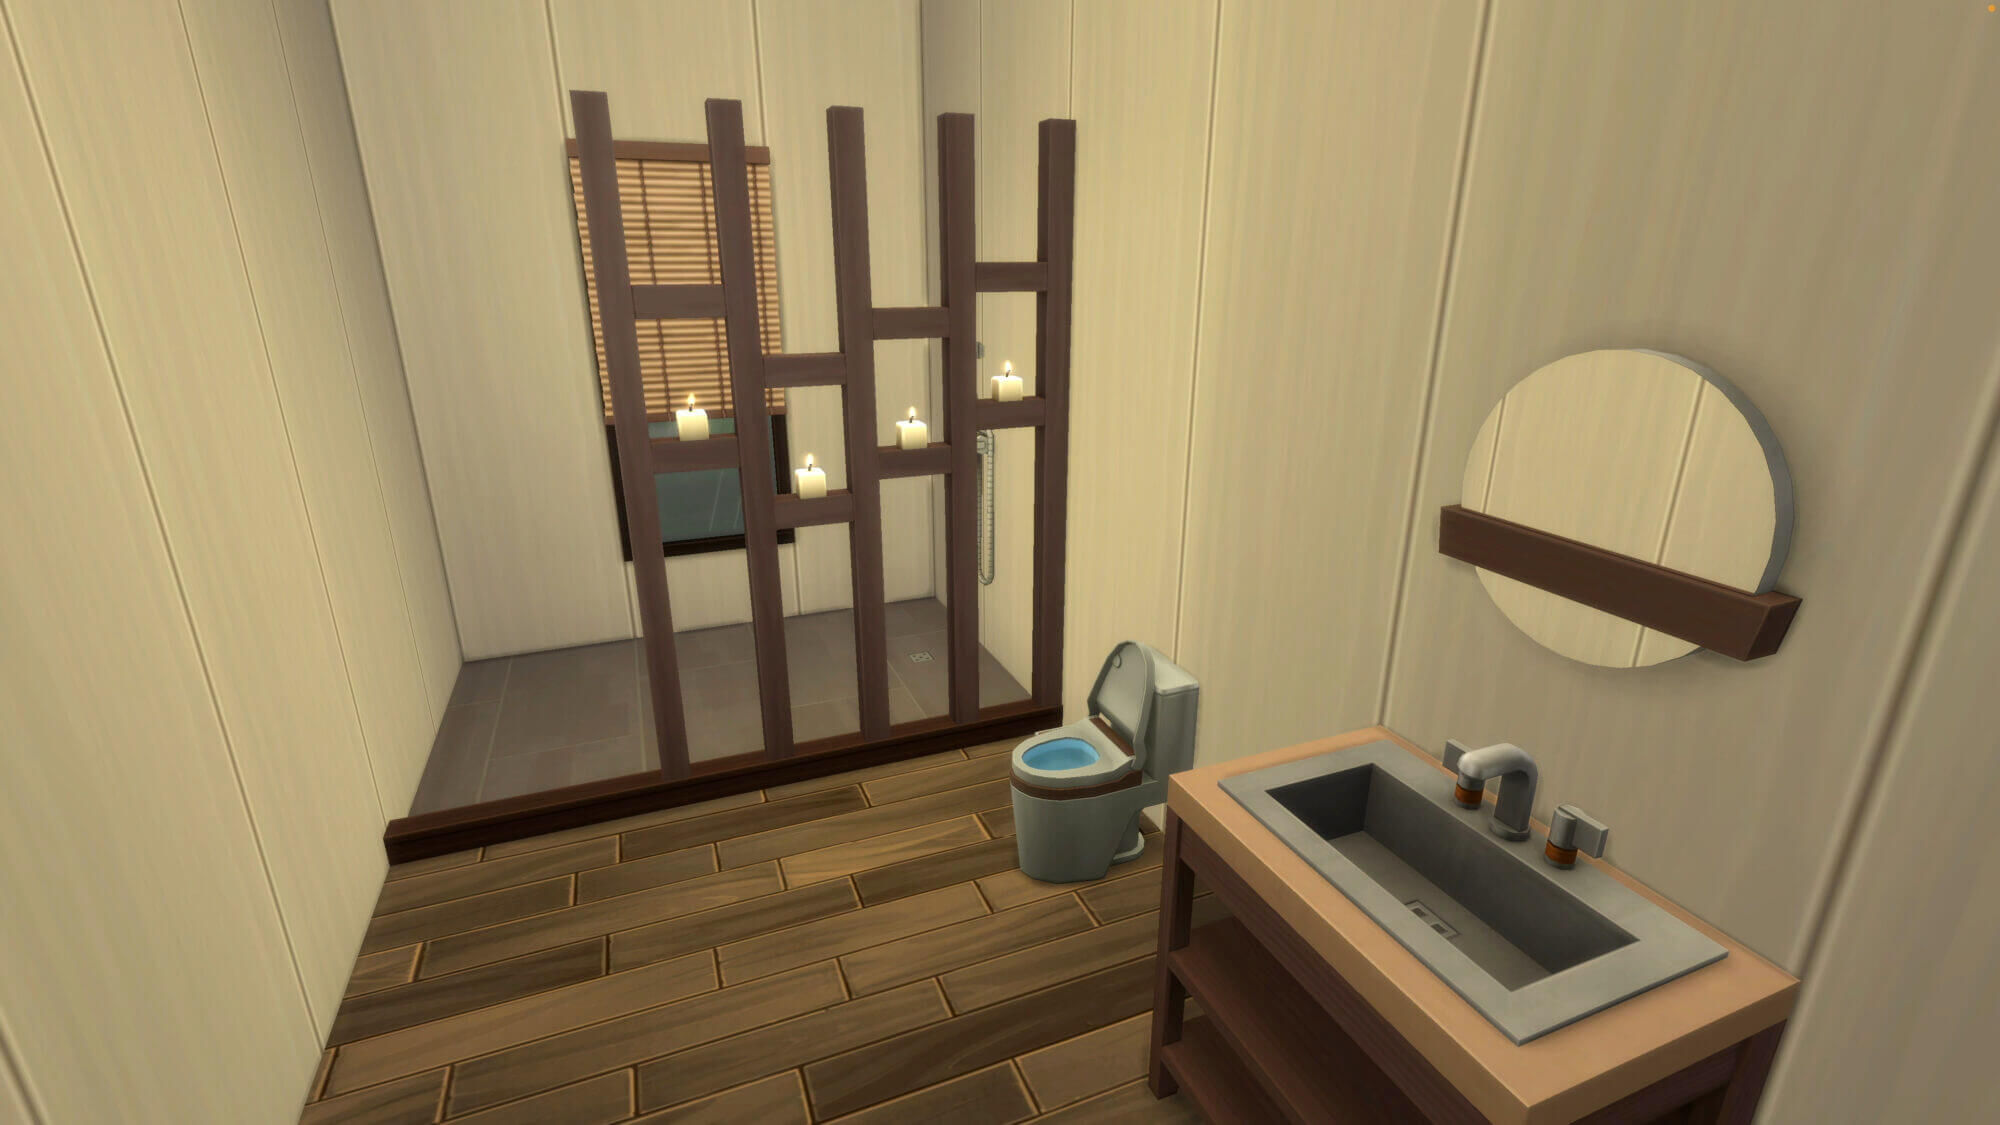 แจกบ้าน The Sims 4 สไตล์บ้านเดี่ยวโฮมมี่ | Inspire by หทัยราษฎร์ 39 45